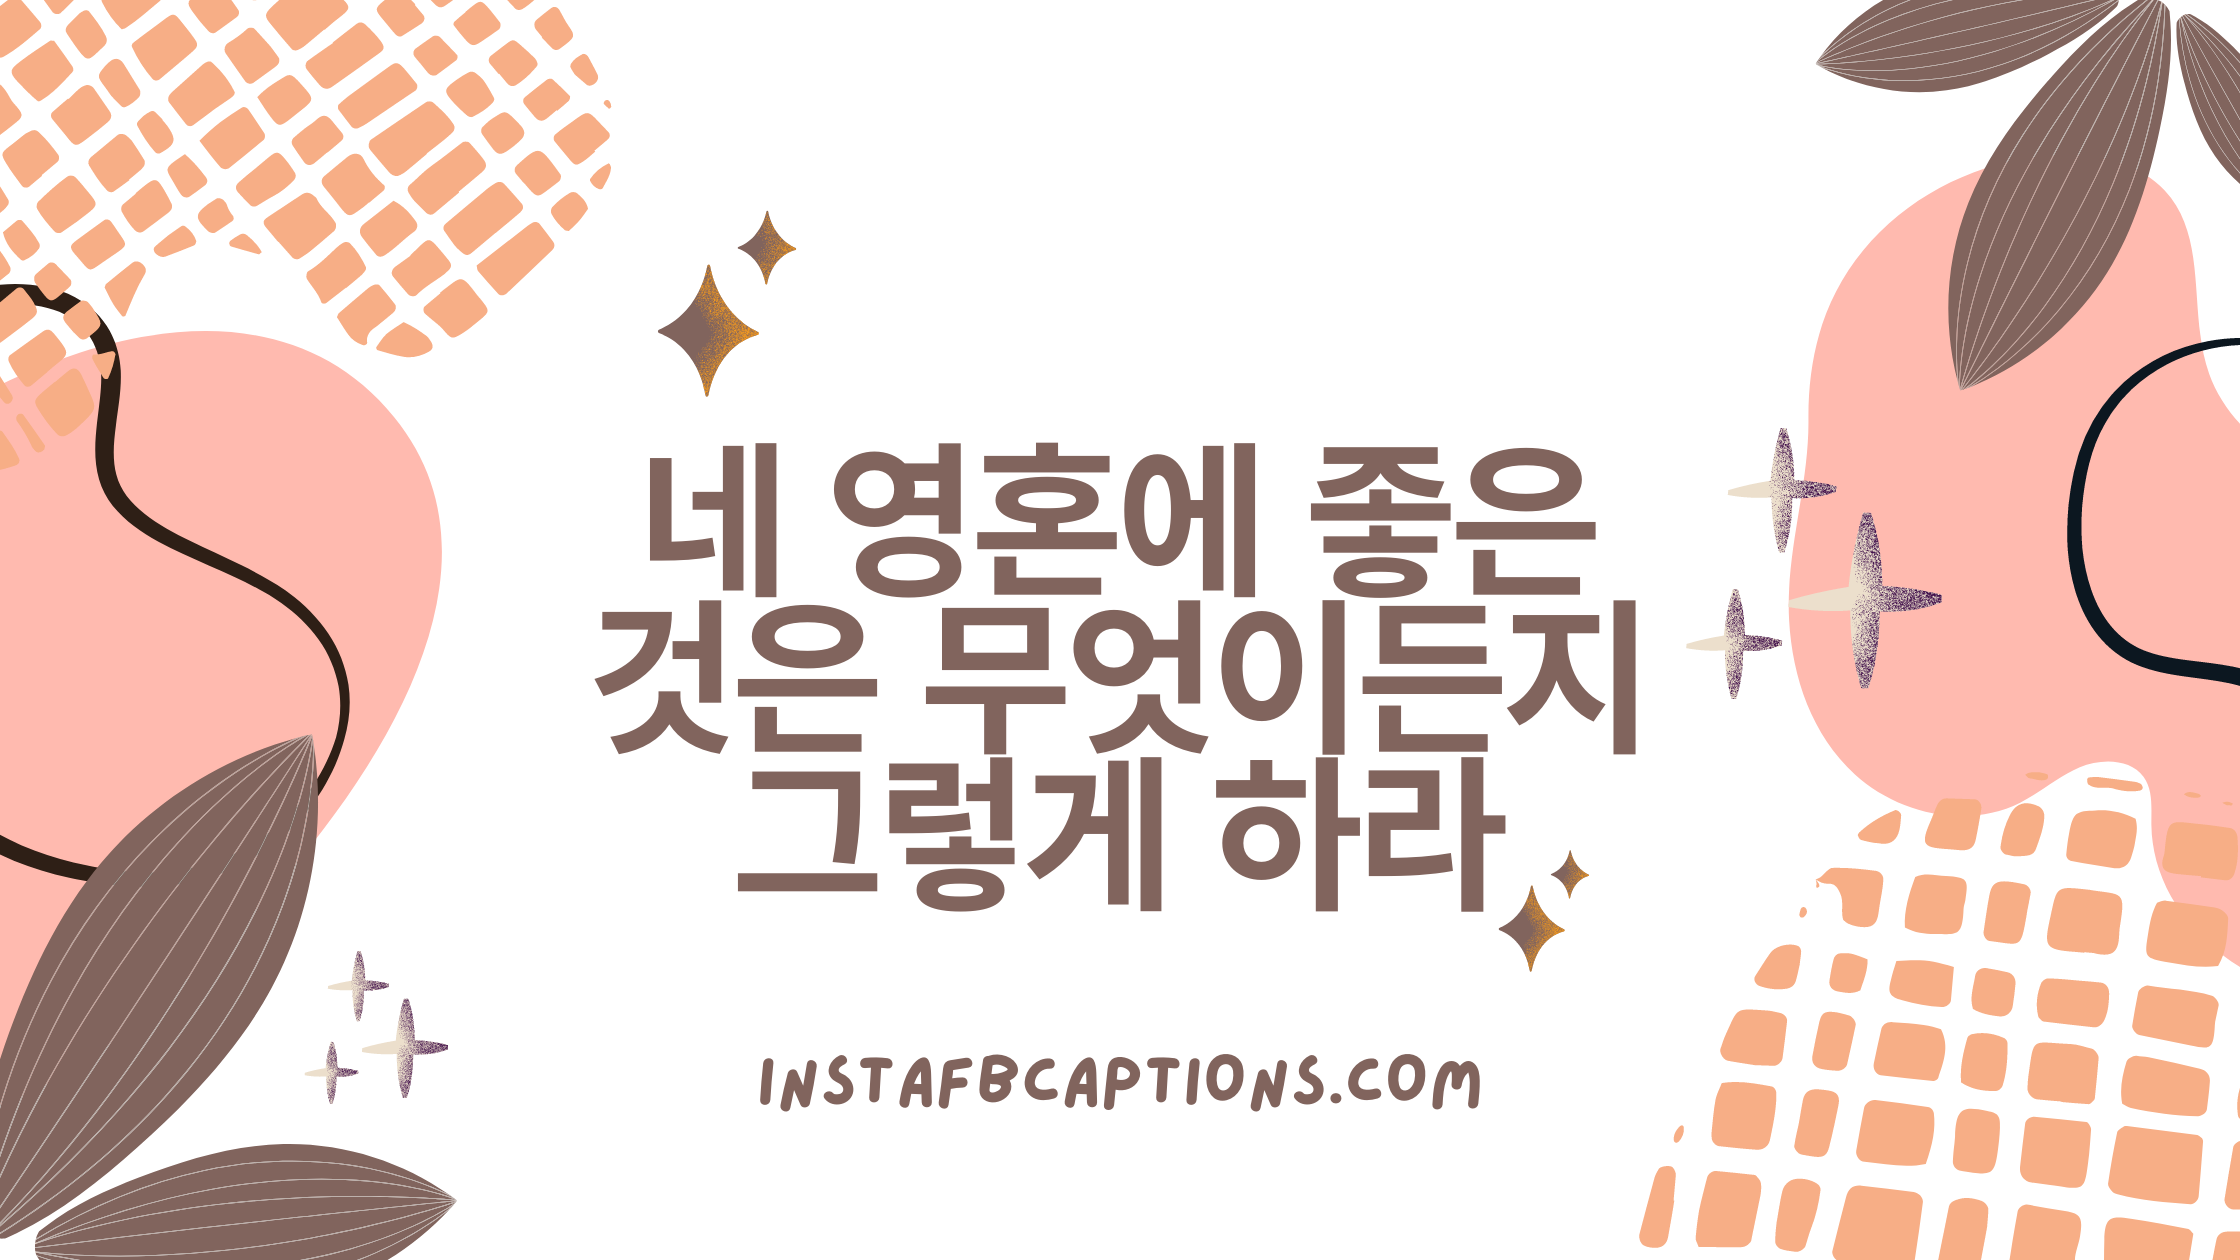 Best Korean Instagram Captions  - Best Korean Instagram Captions  - 103 Korean Instagram Captions Quotes in 2022